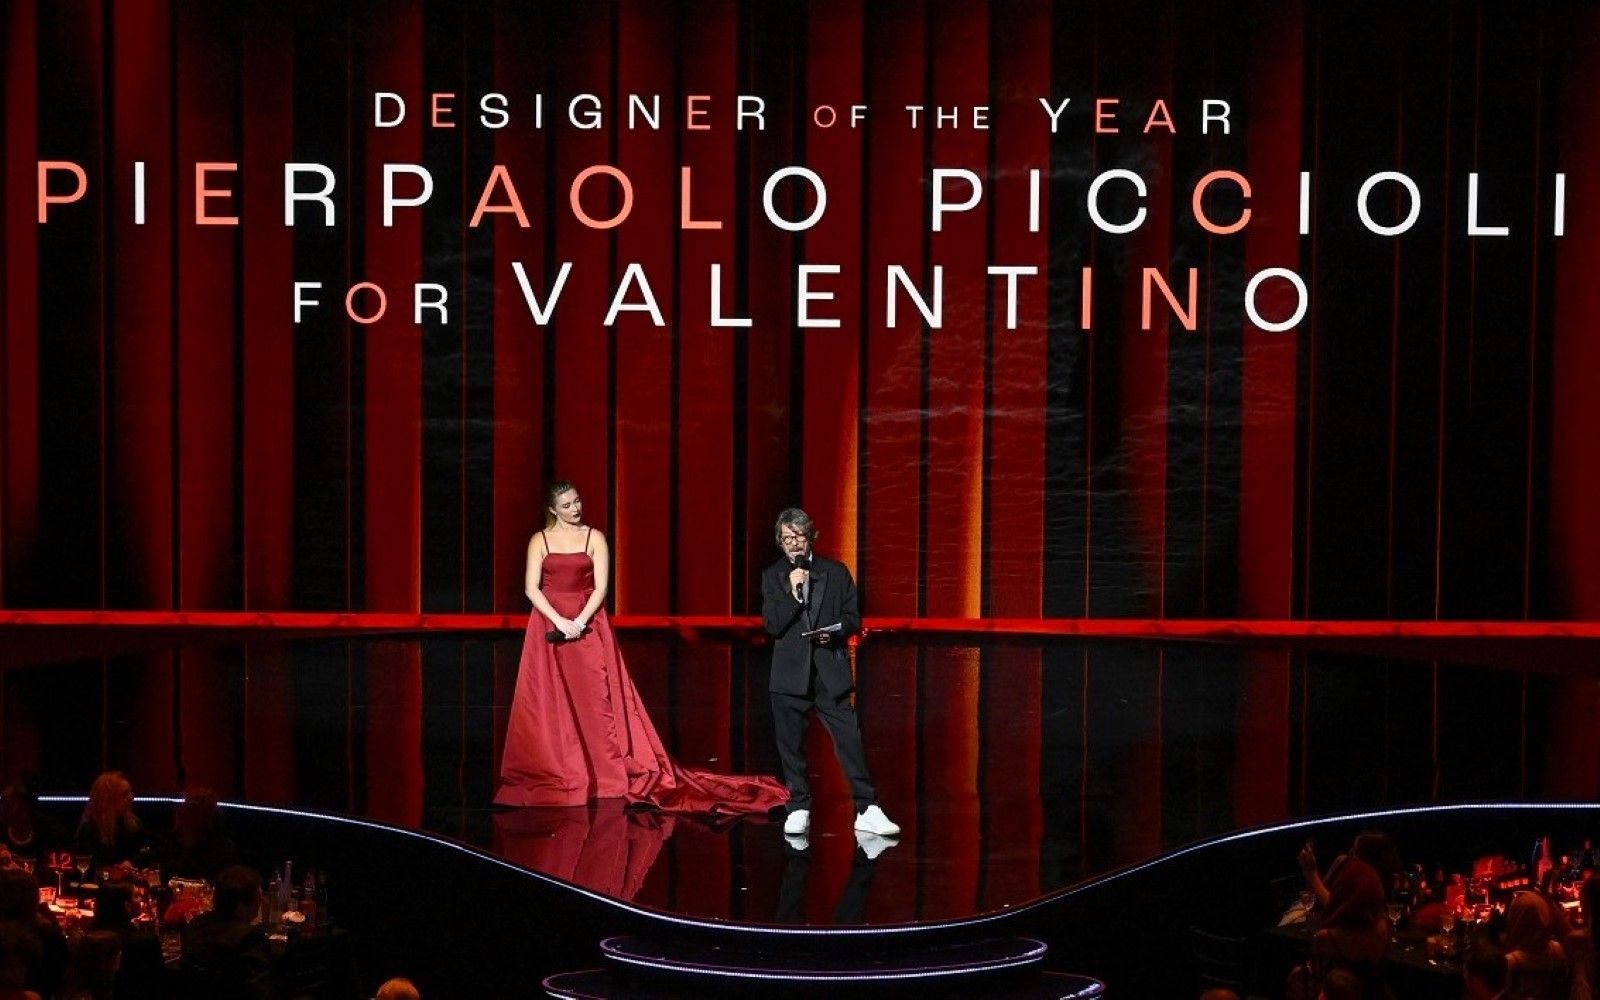 Valentino creative director Pierpaolo Piccioli wins designer of